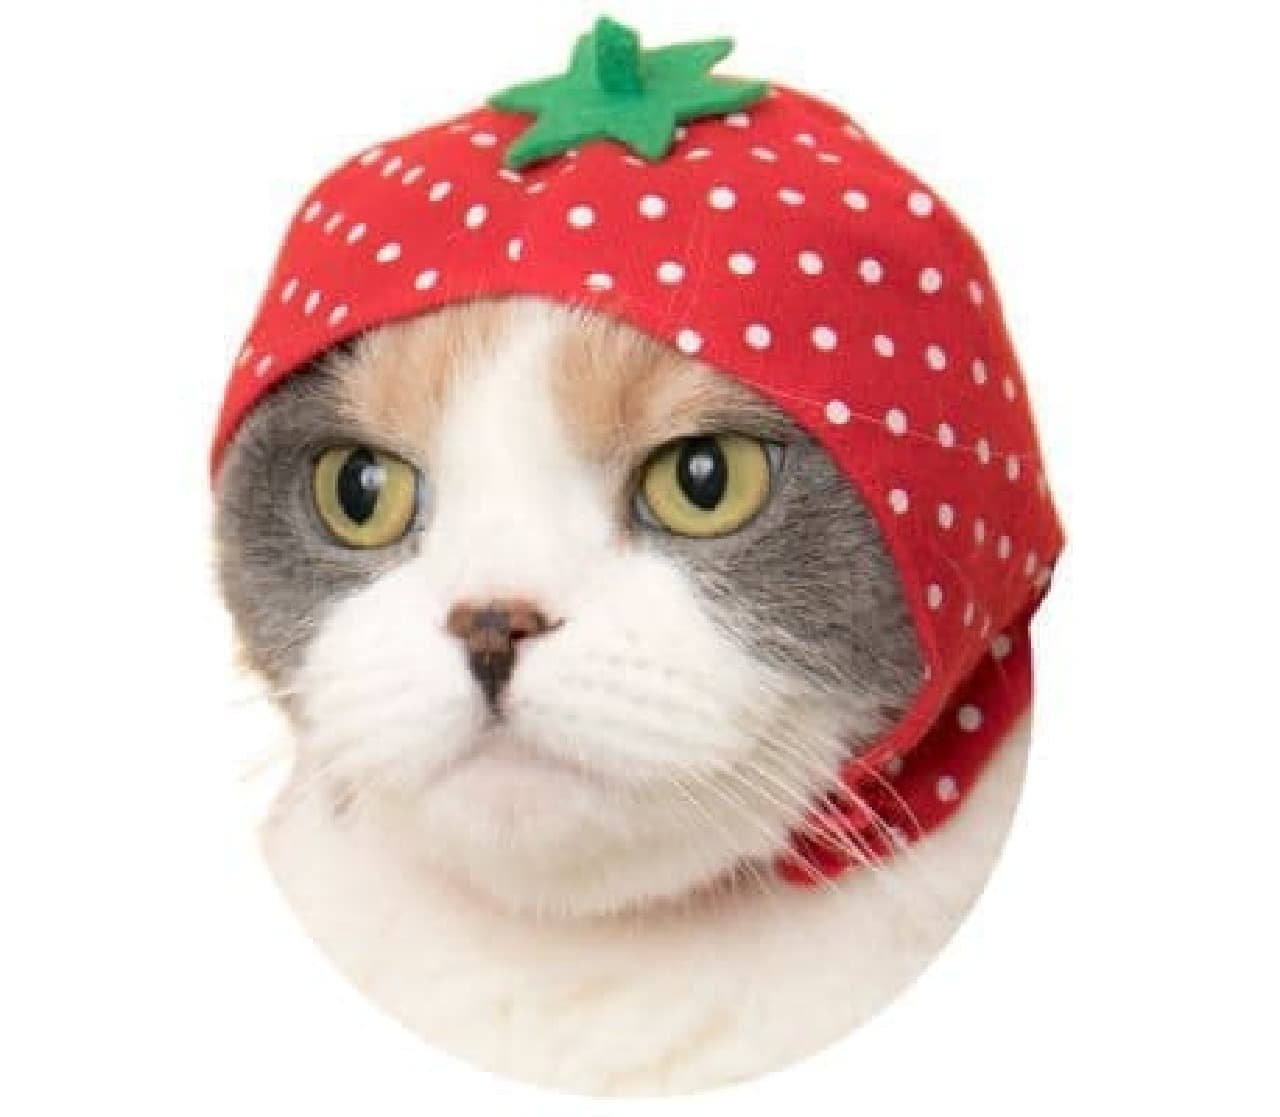 "Cute cute cat fruit-chan" headgear for "cats"